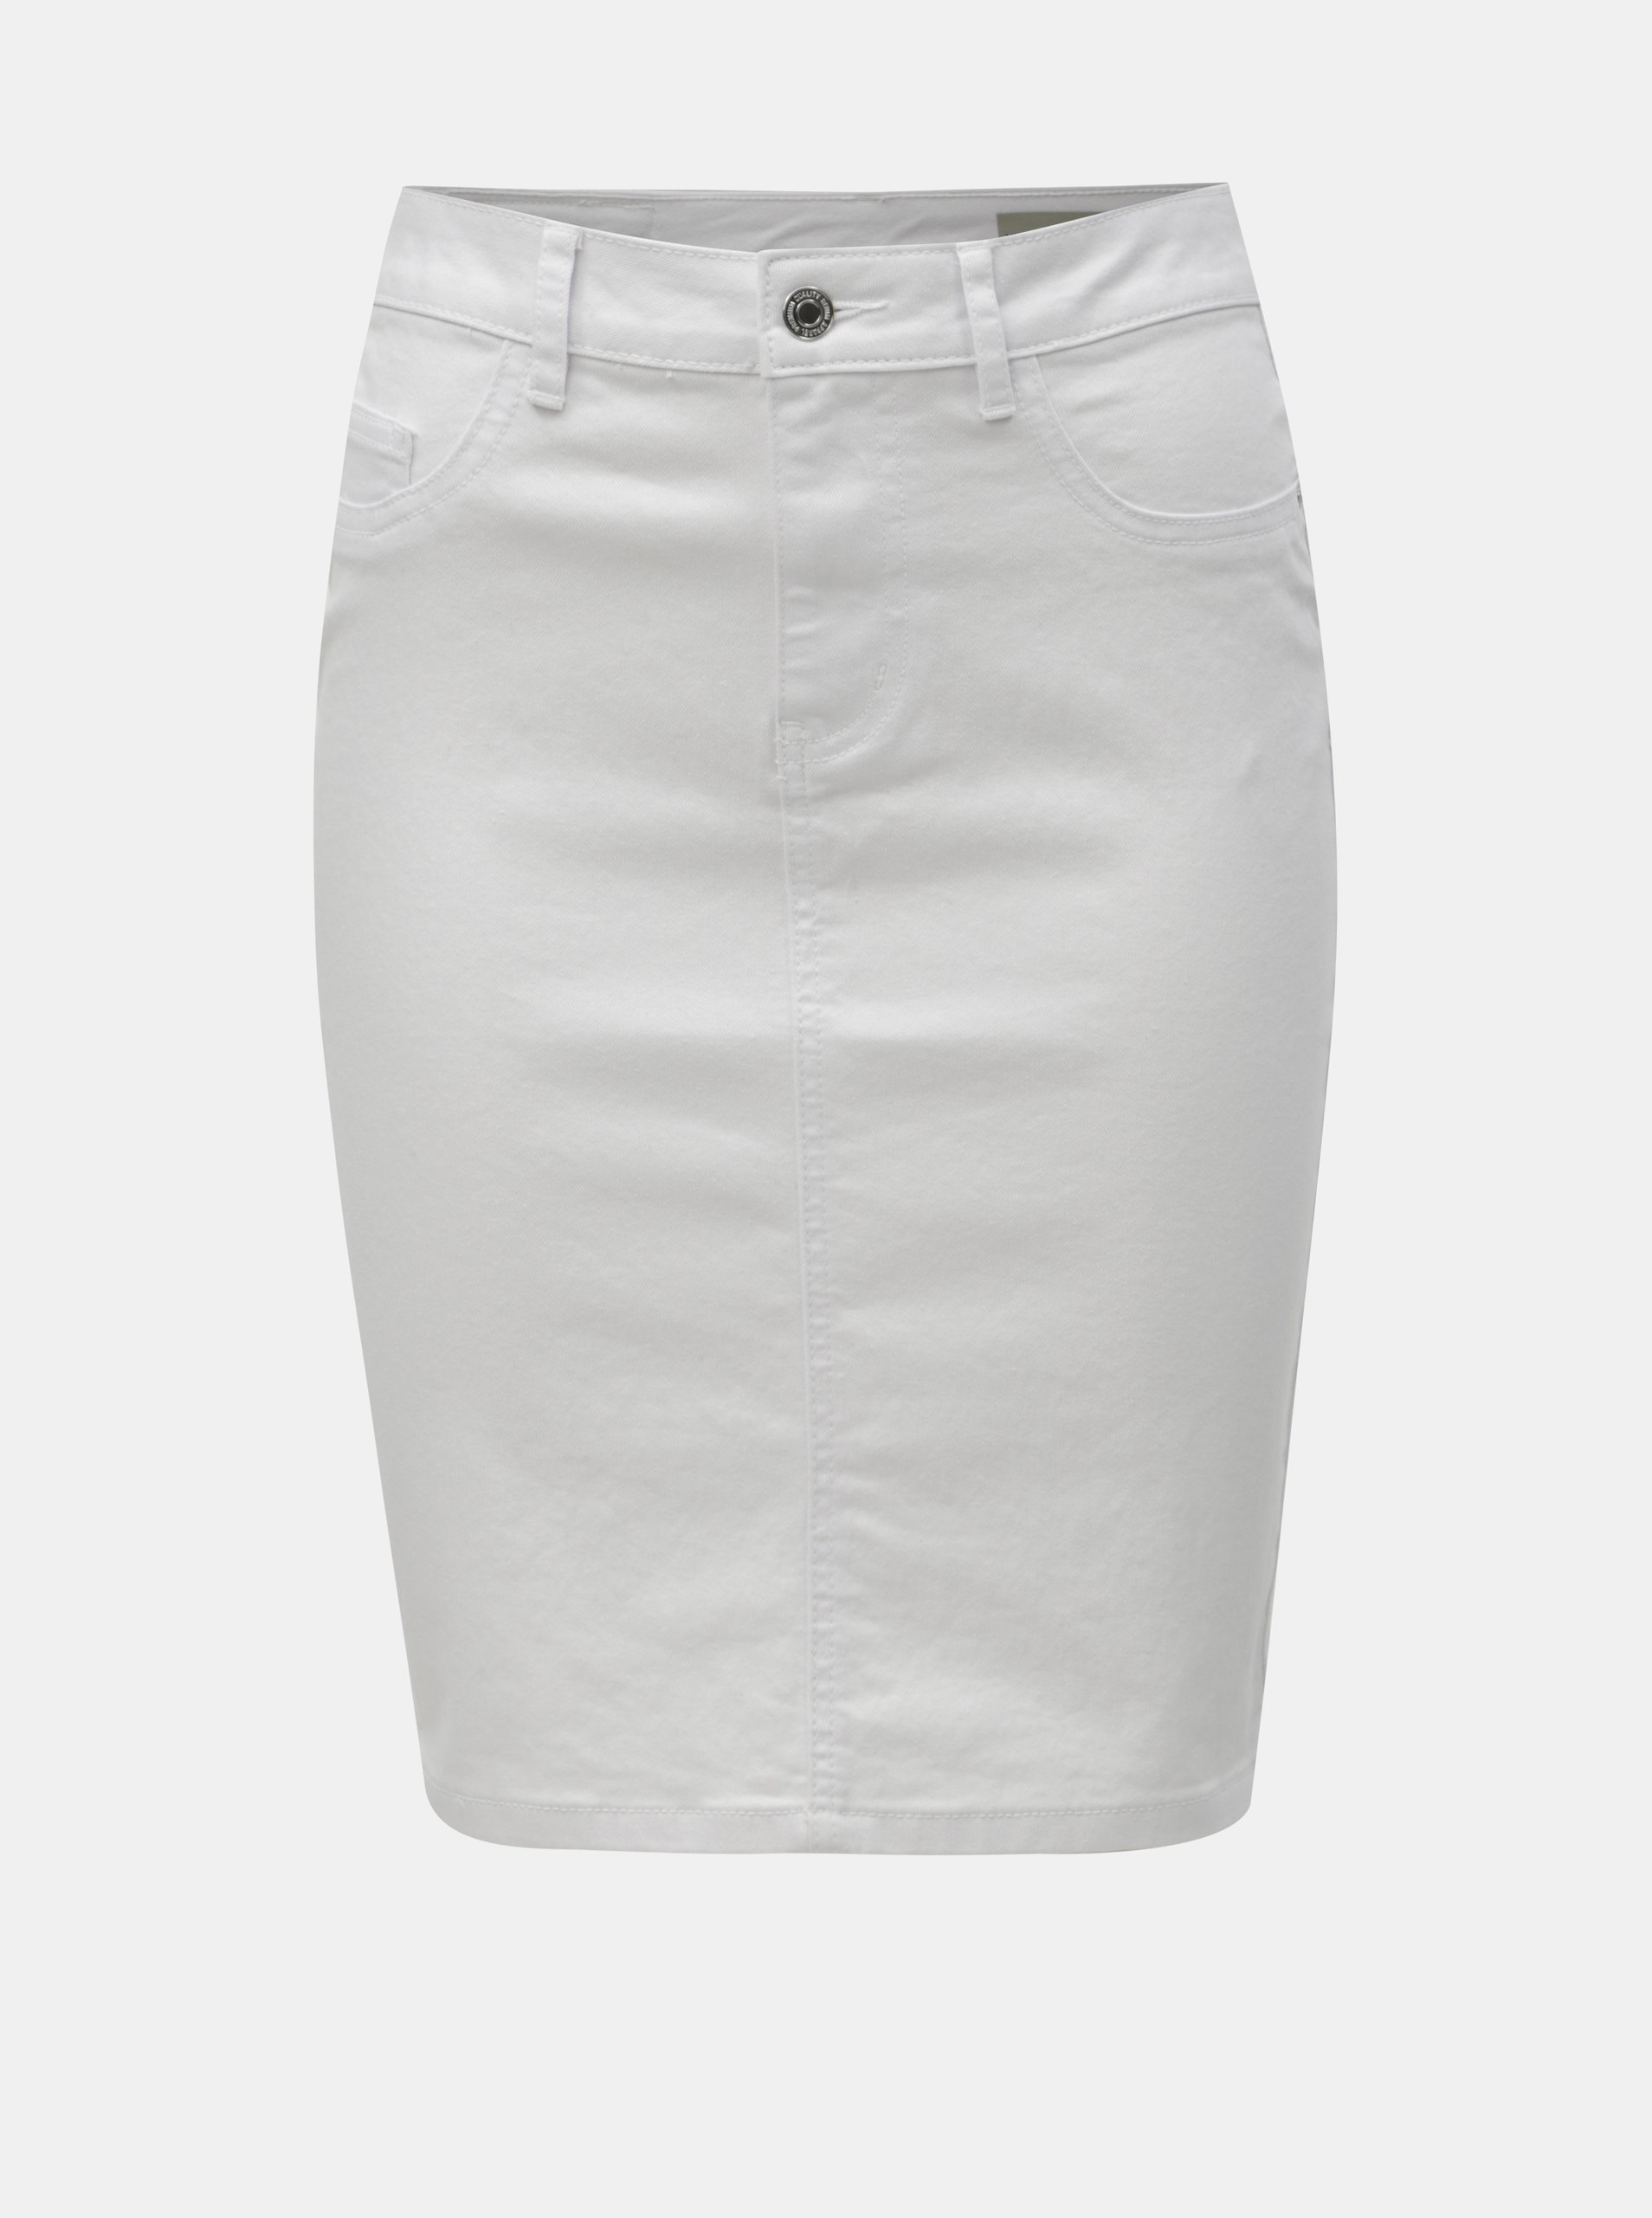 Bílá džínová pouzdrová sukně VERO MODA Hot Nine